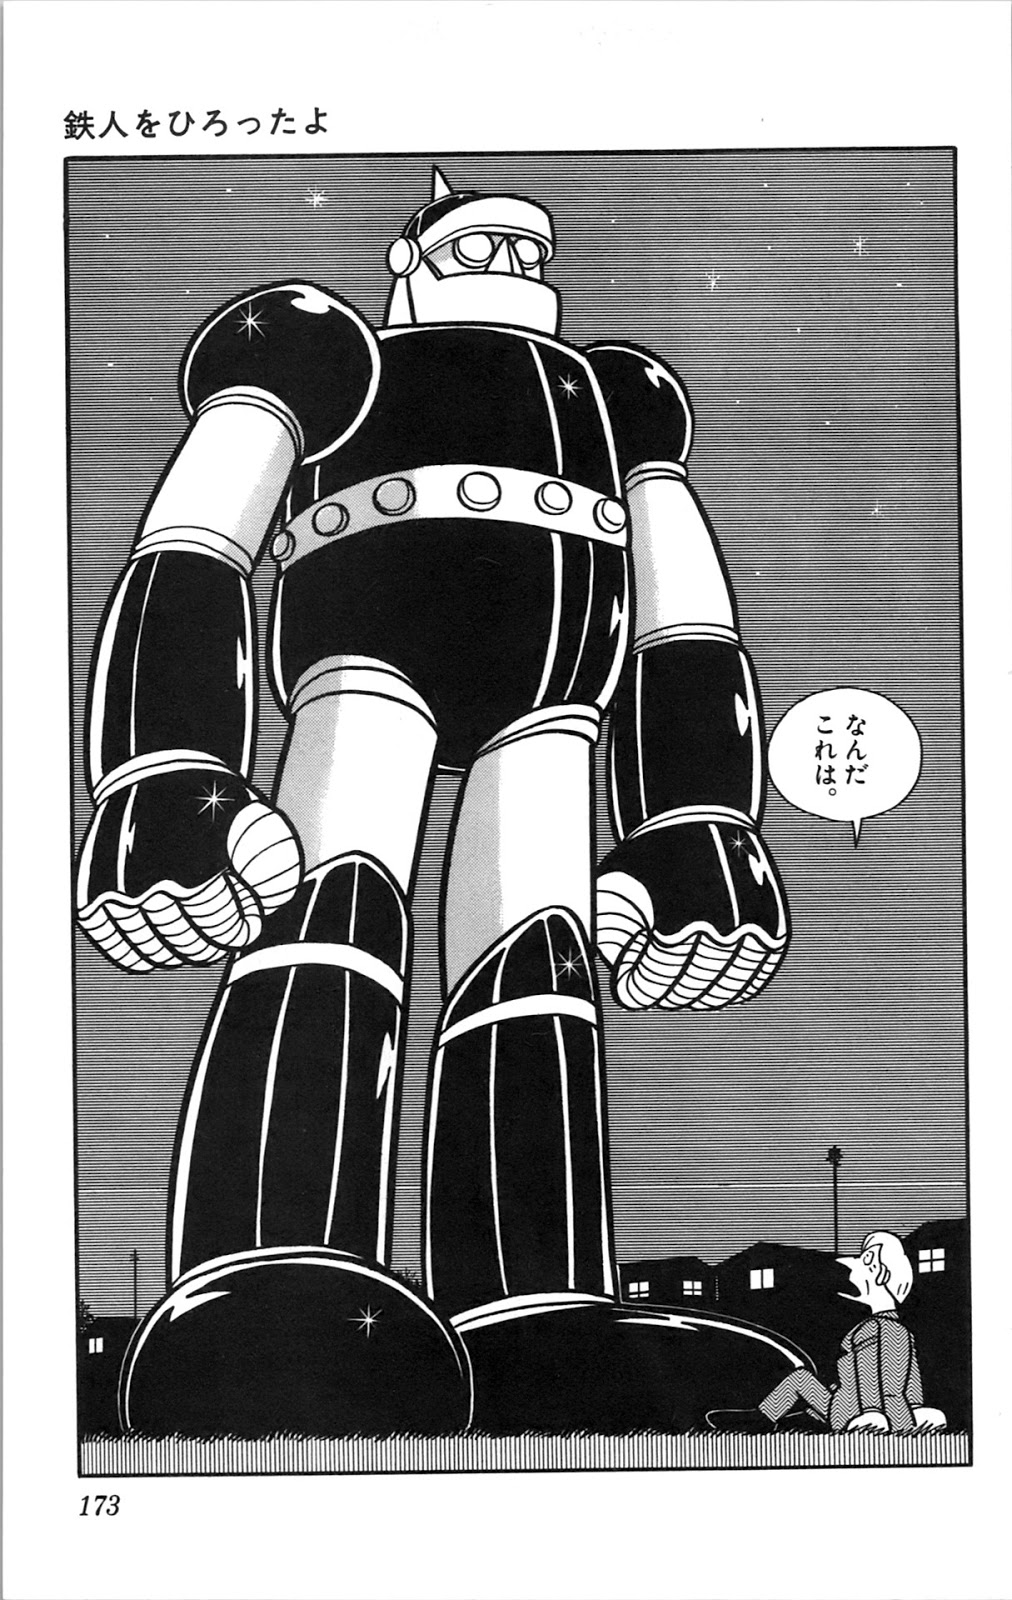 ロボット漫画追加し隊 10月分 雑草庫